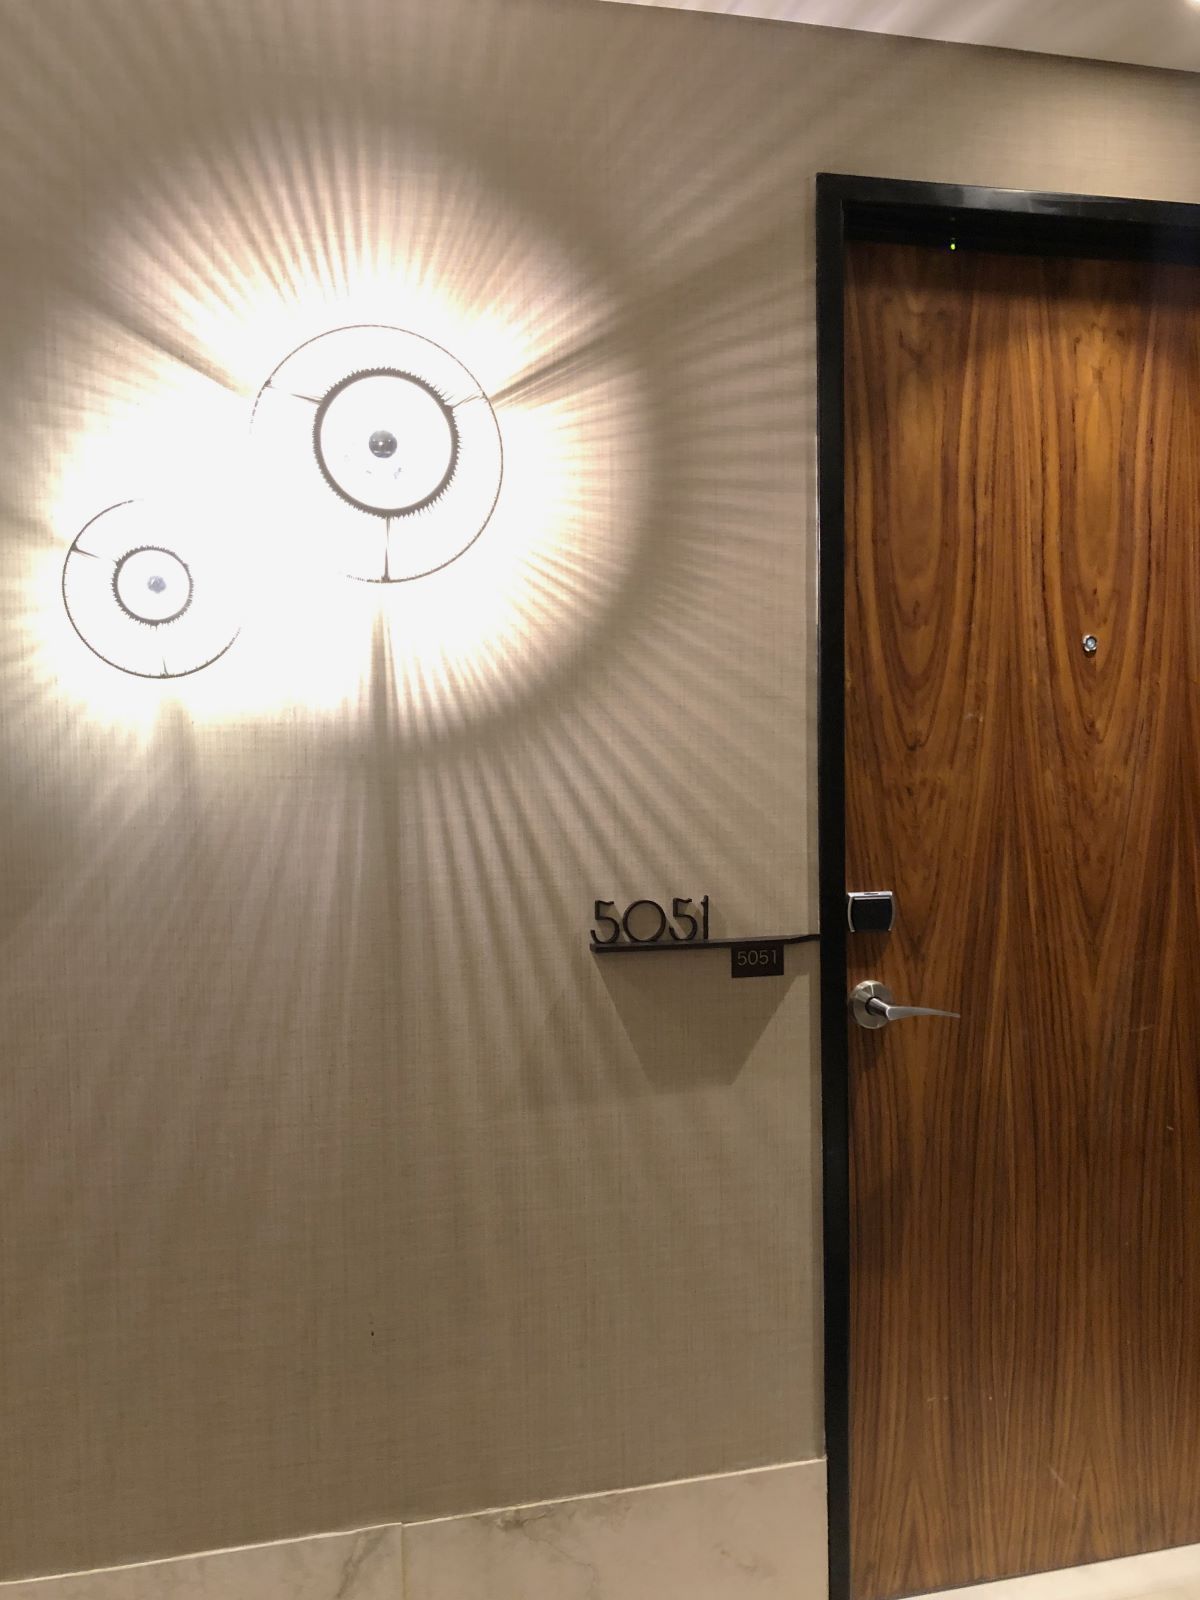 Outdoor of a hotel room with light fixtures and wooden door